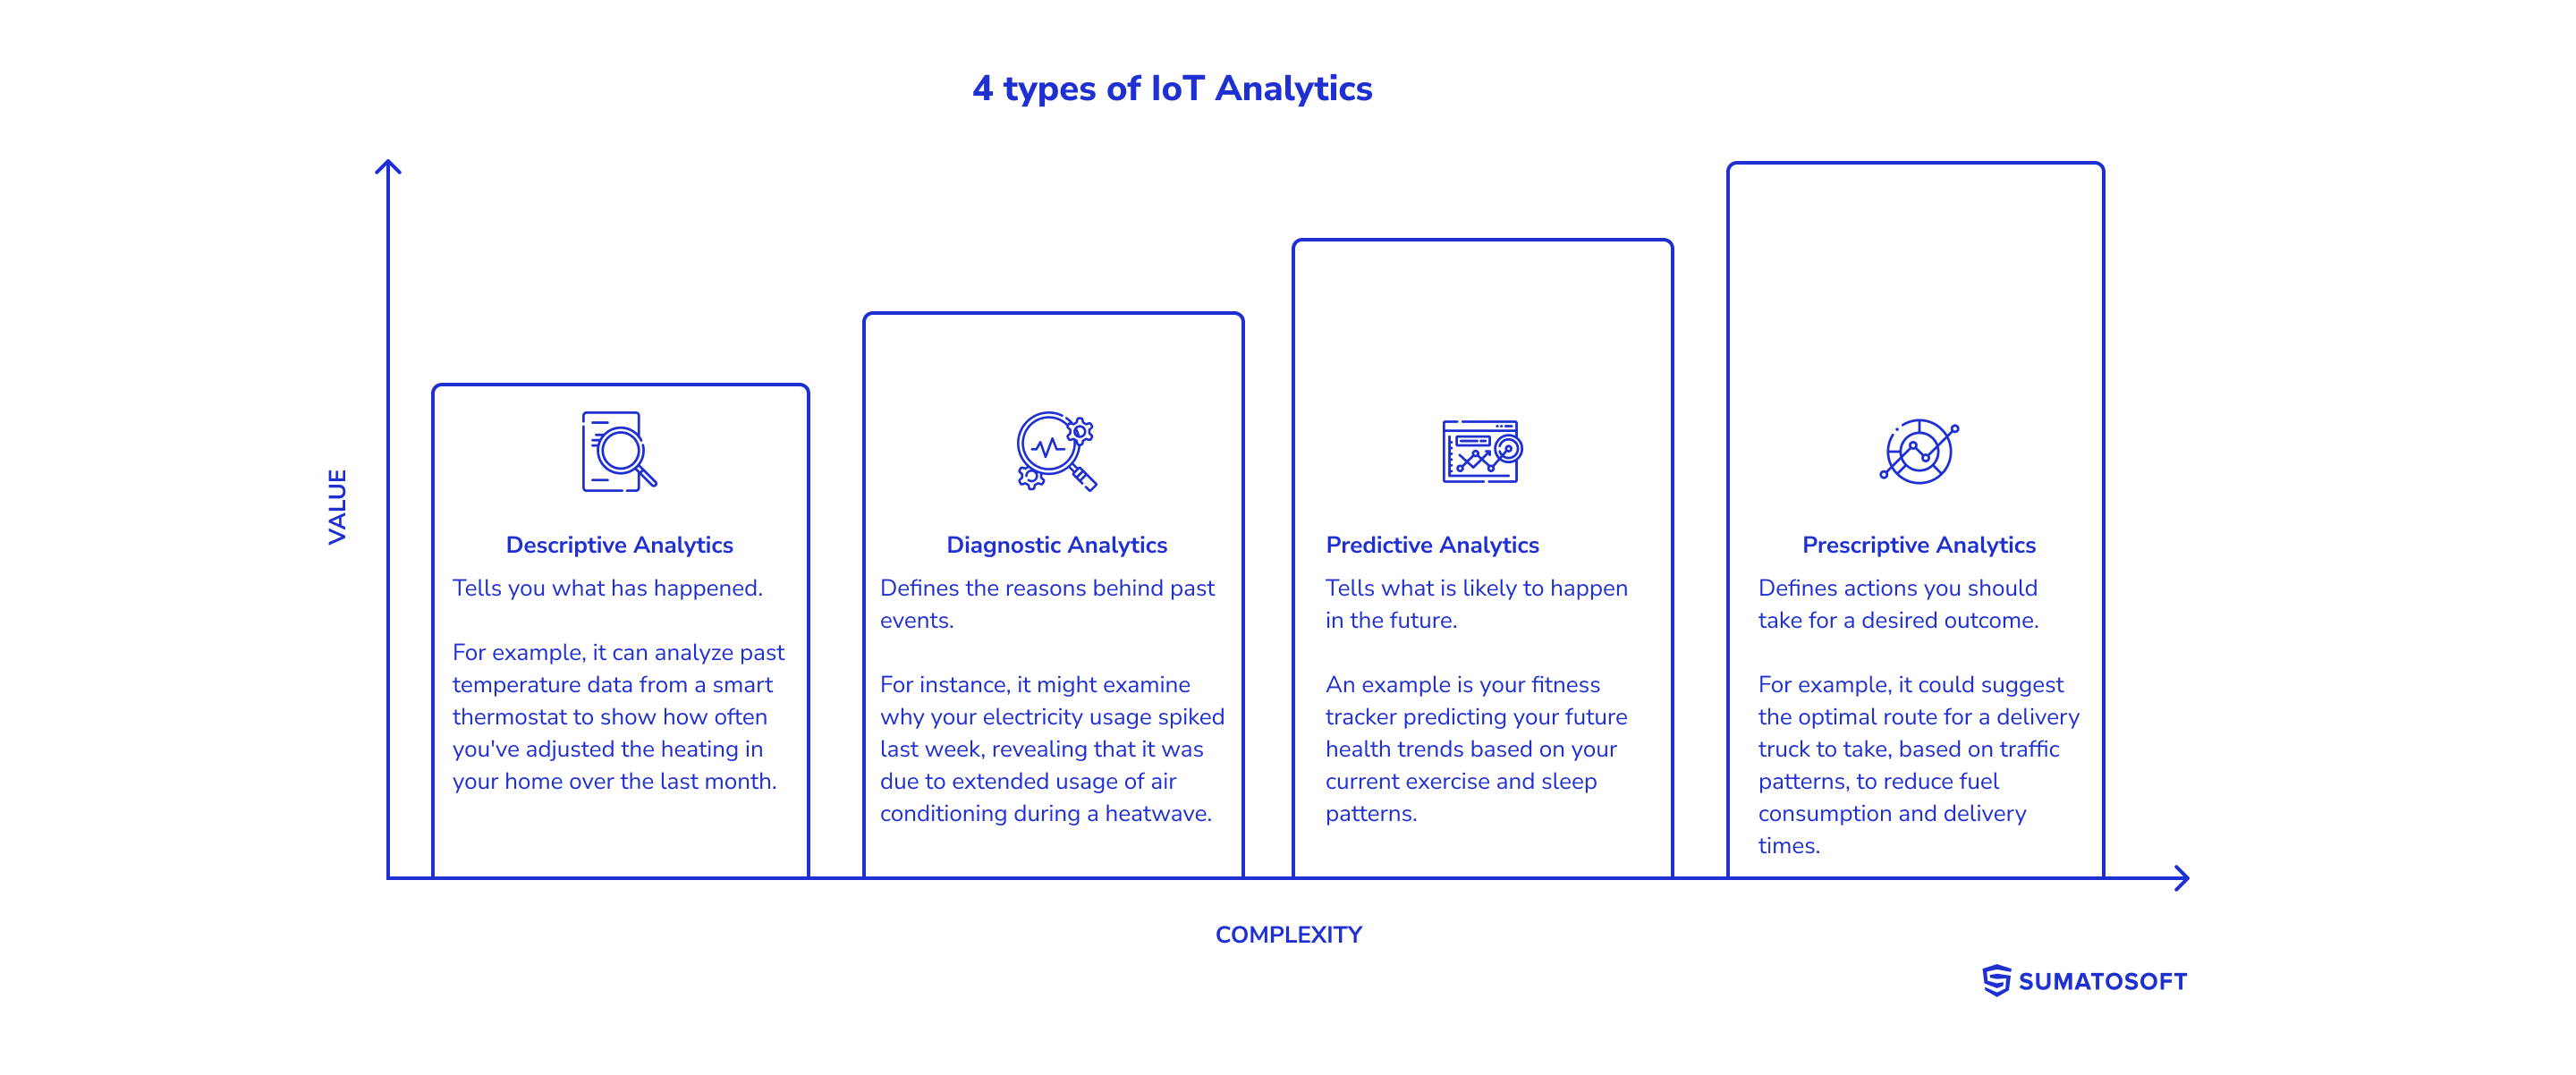 4 types of IoT Analytics